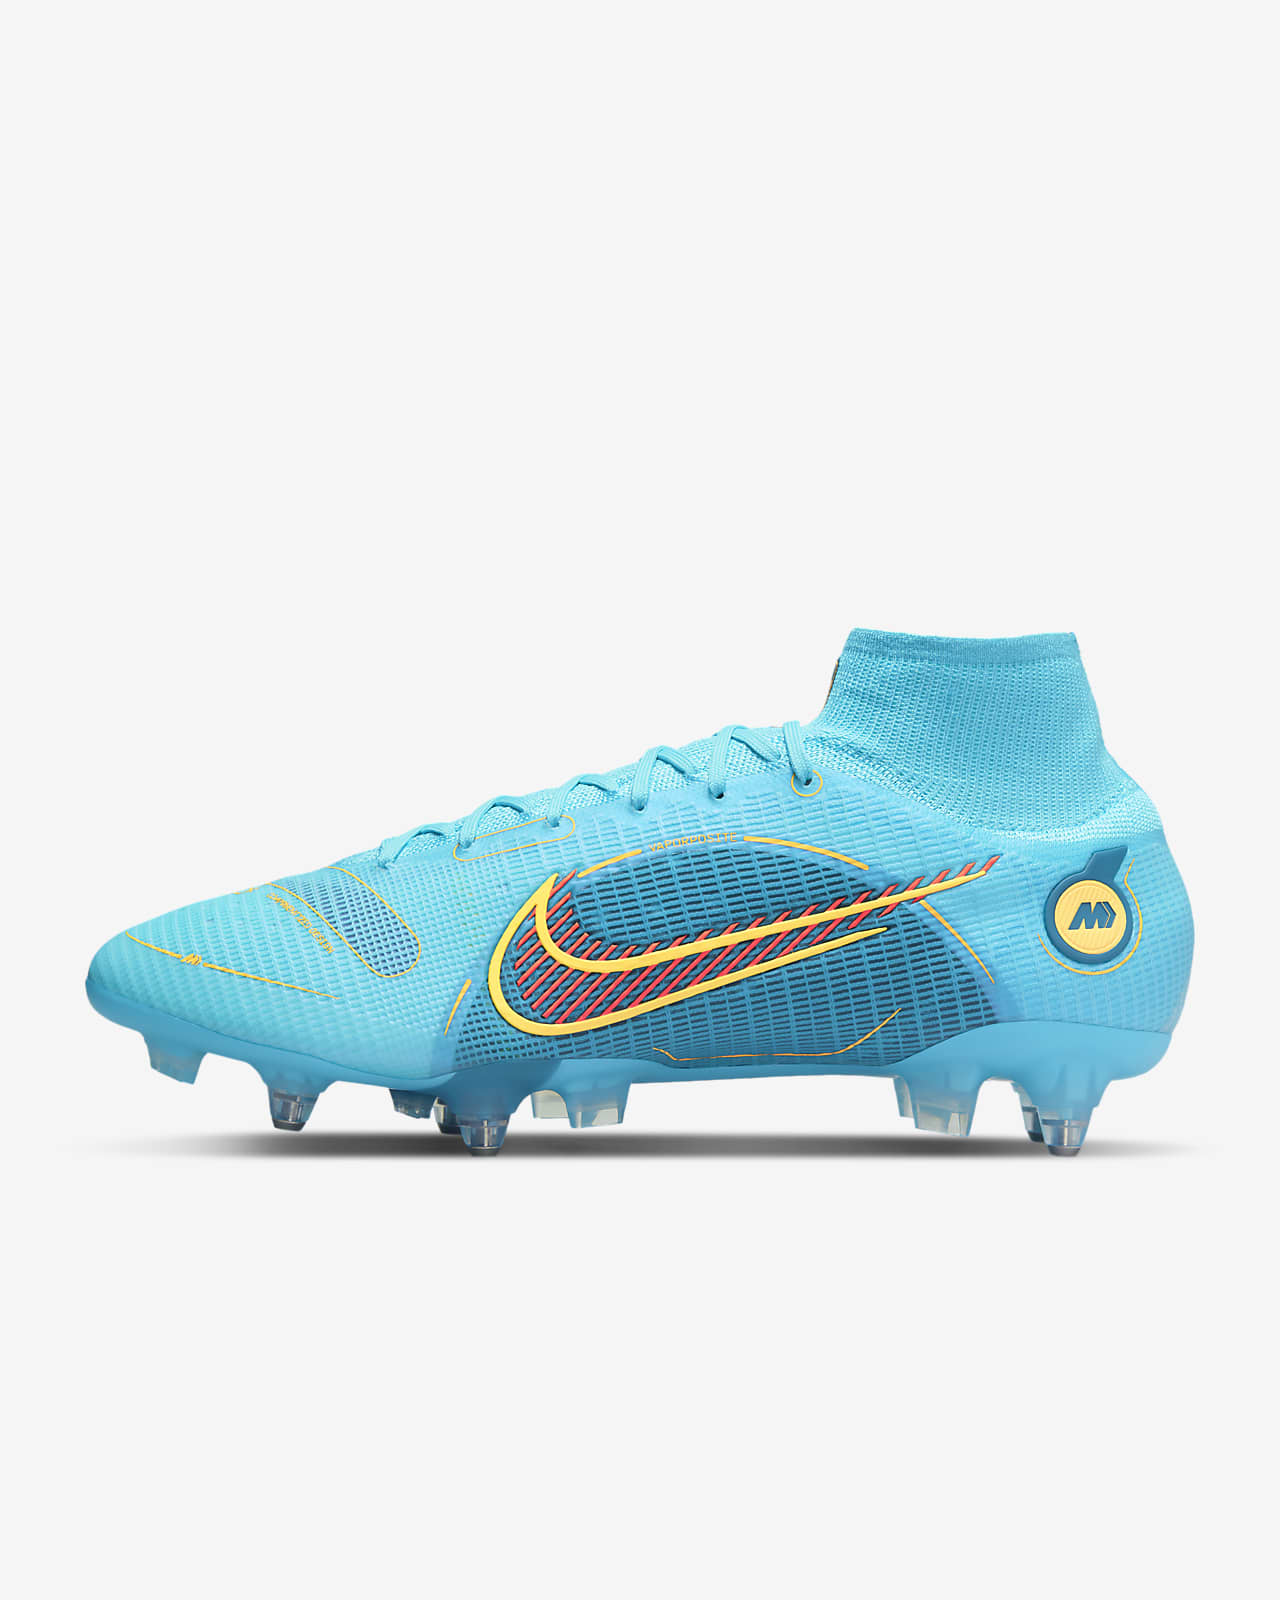 Ποδοσφαιρικά παπούτσια για μαλακές επιφάνειες Nike Mercurial Superfly 8 Elite SG-PRO με σύστημα πρόσφυσης Anti-Clog